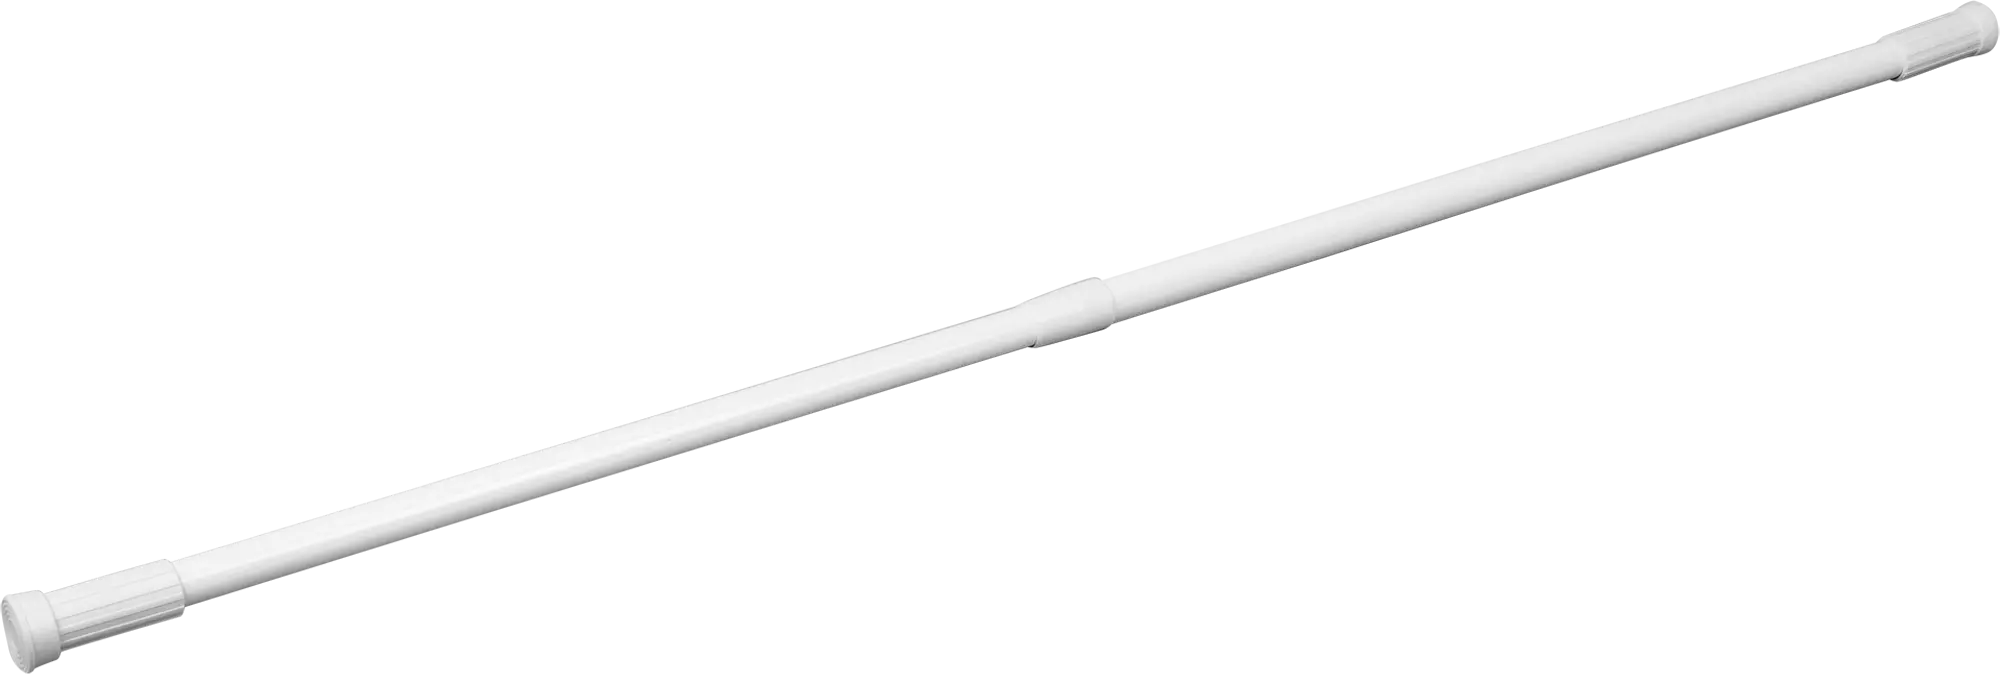 Штанга для душа Vidage телескопическая 70-120 см 2.2 см цвет белый